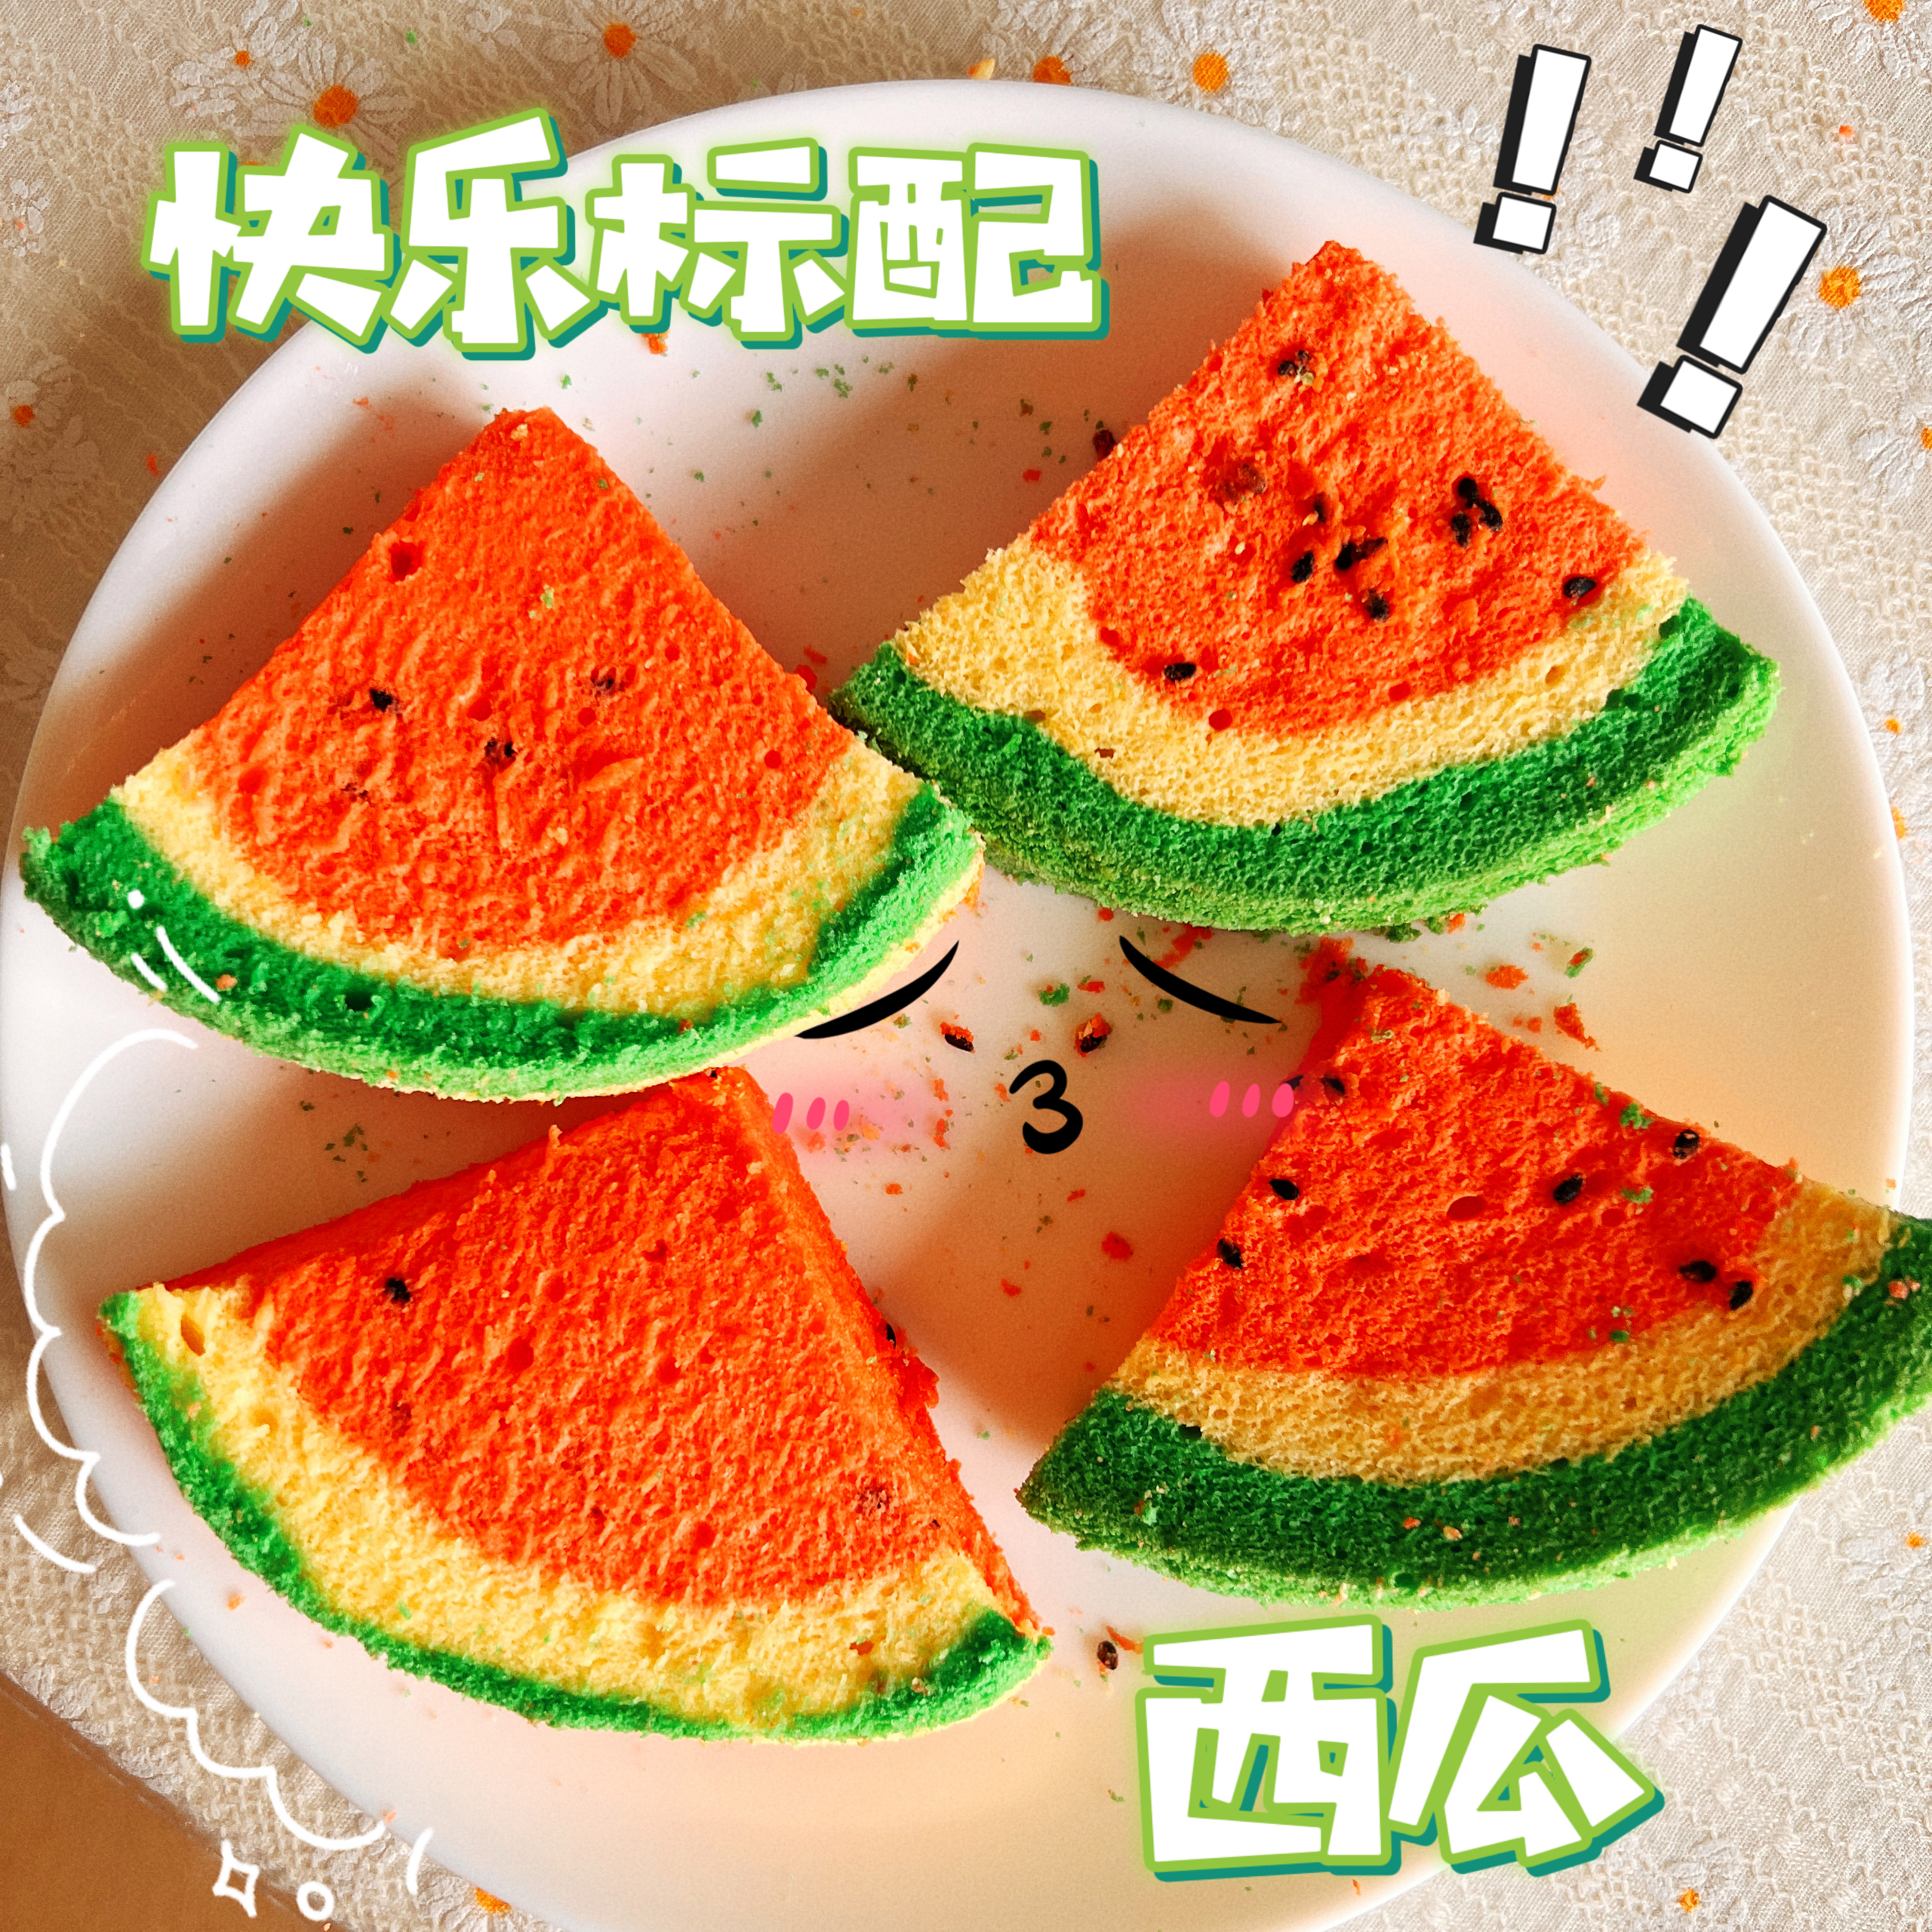 西瓜蛋糕——一次成形